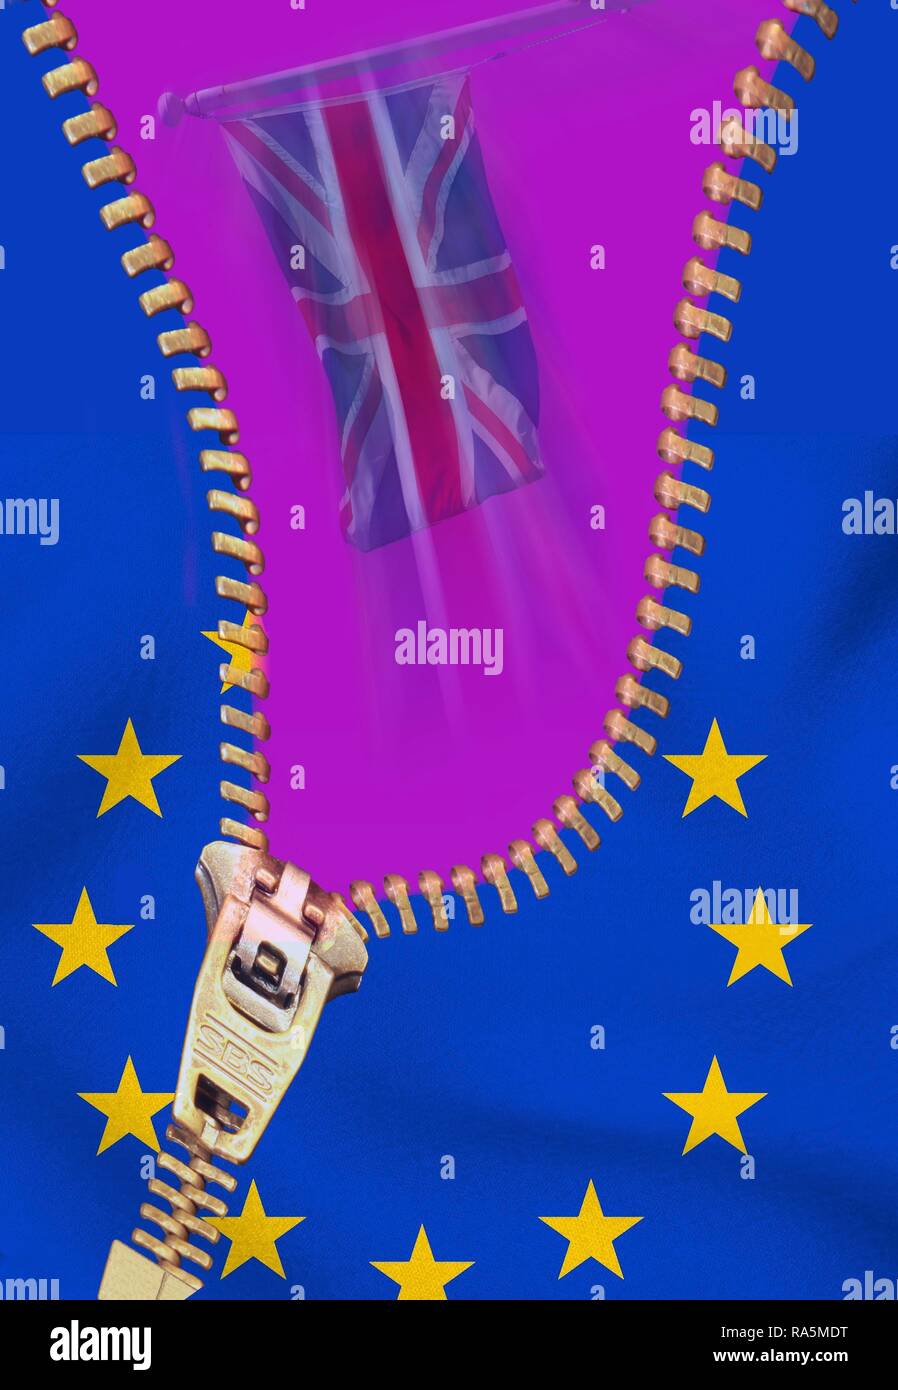 Drapeau britannique et de l'UE étoile, à glissière, symbolique de l'UE, sortie de l'image Brexit, Grande-Bretagne Banque D'Images